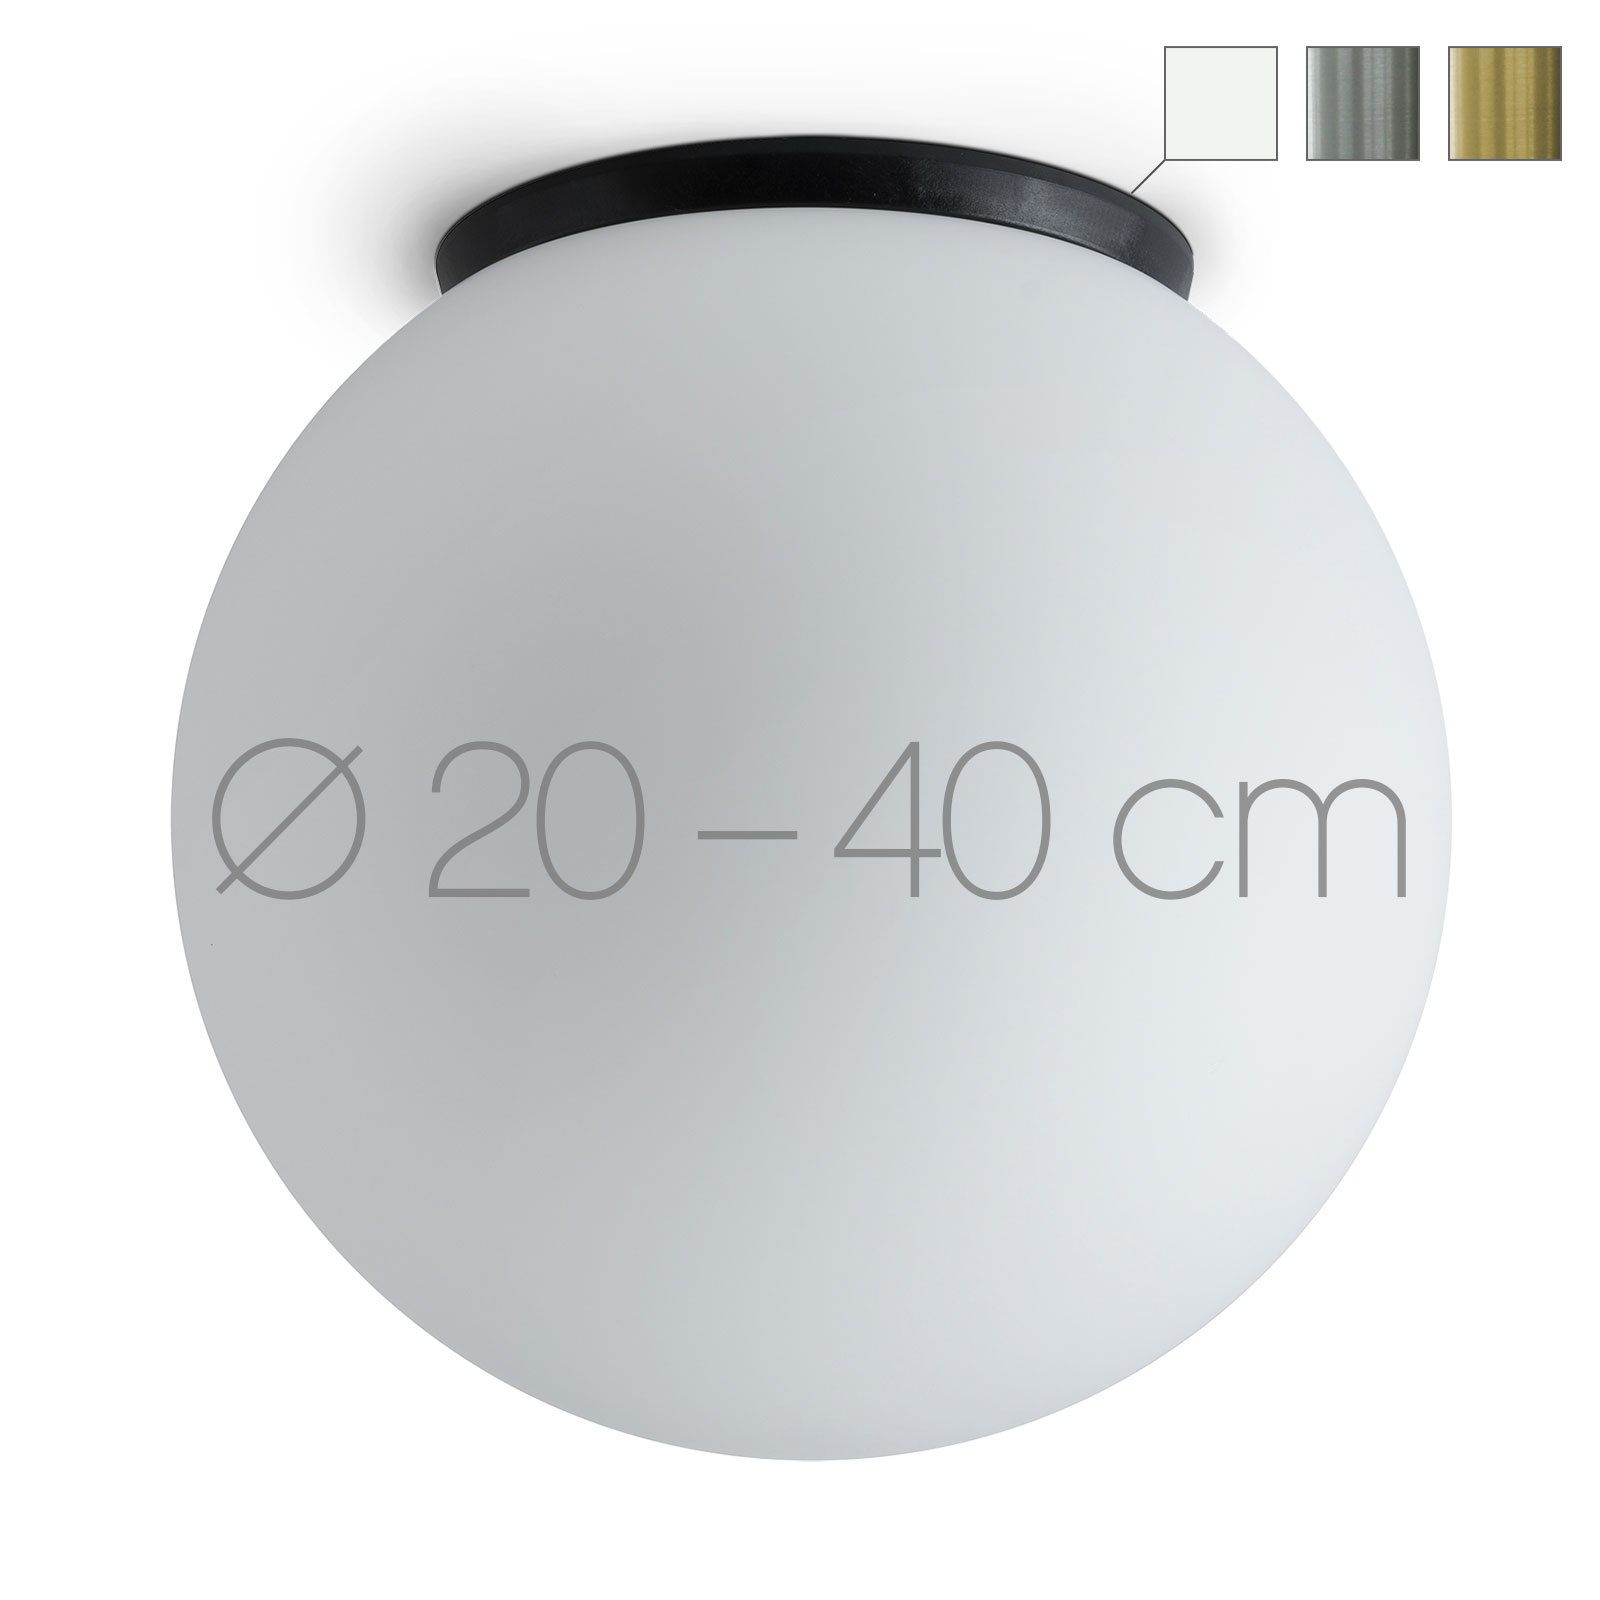 Schlichte Kugel-Deckenleuchte aus Opalglas SPHERA, IP65, Ø 20–40 cm: Klassische Flur-Beleuchtung: die Kugel-Deckenleuchte überzeugt mit samtig-mattem Opalglas (hier Ø 25 cm)